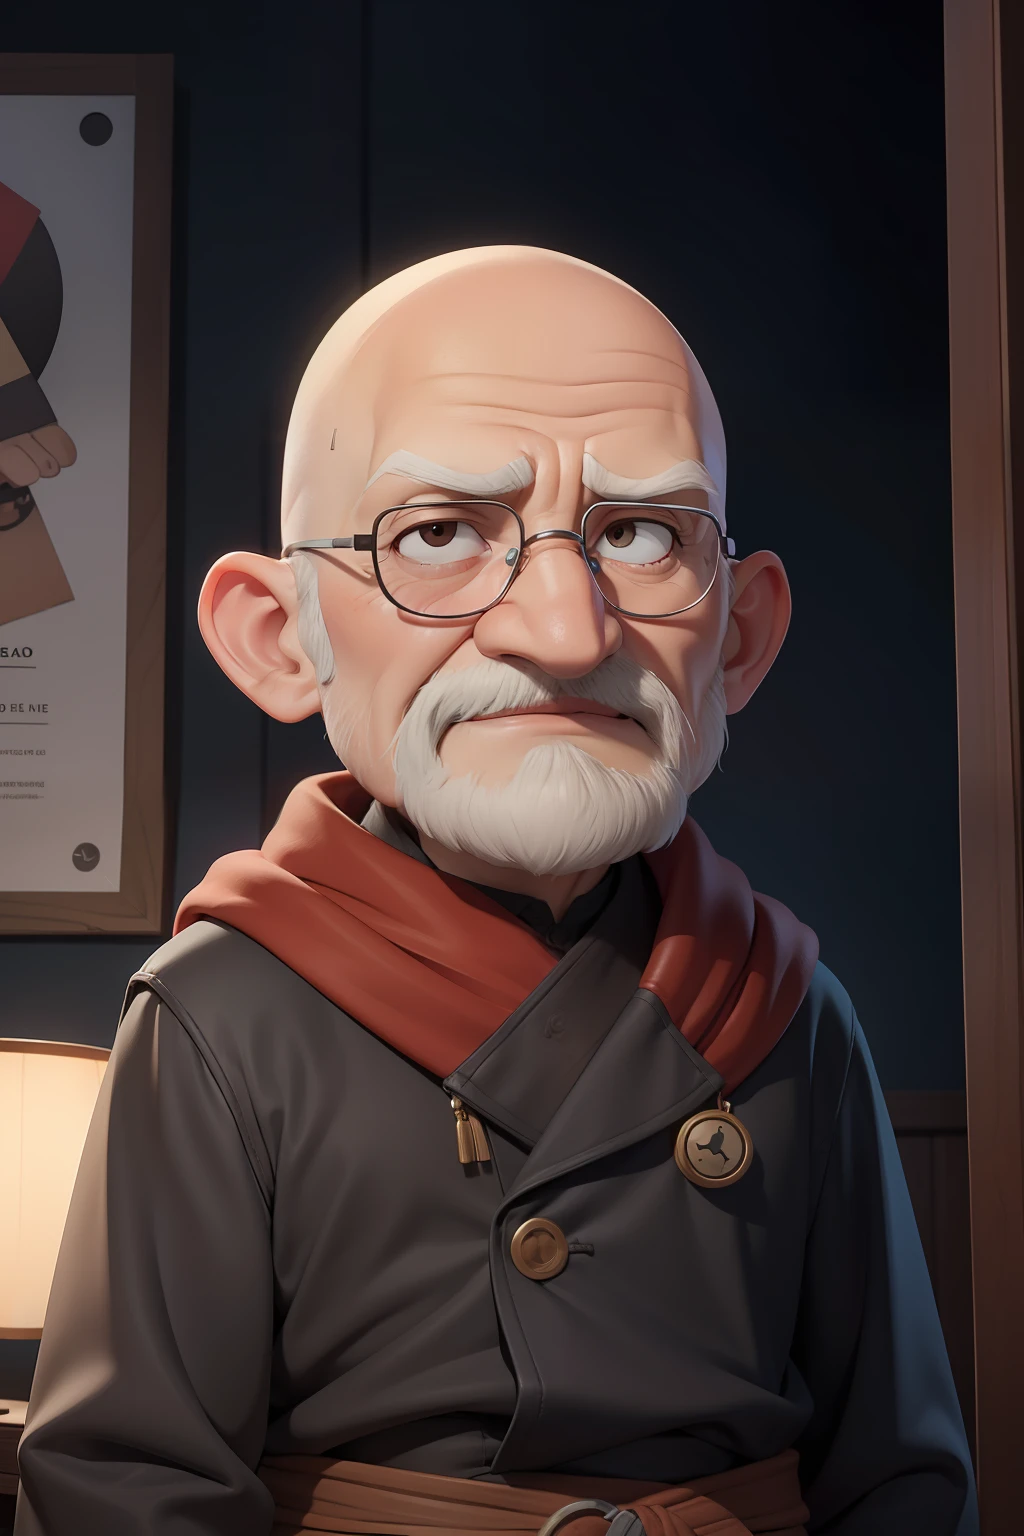 Avez-vous déjà remarqué la tête chauve de grand-père Niko??